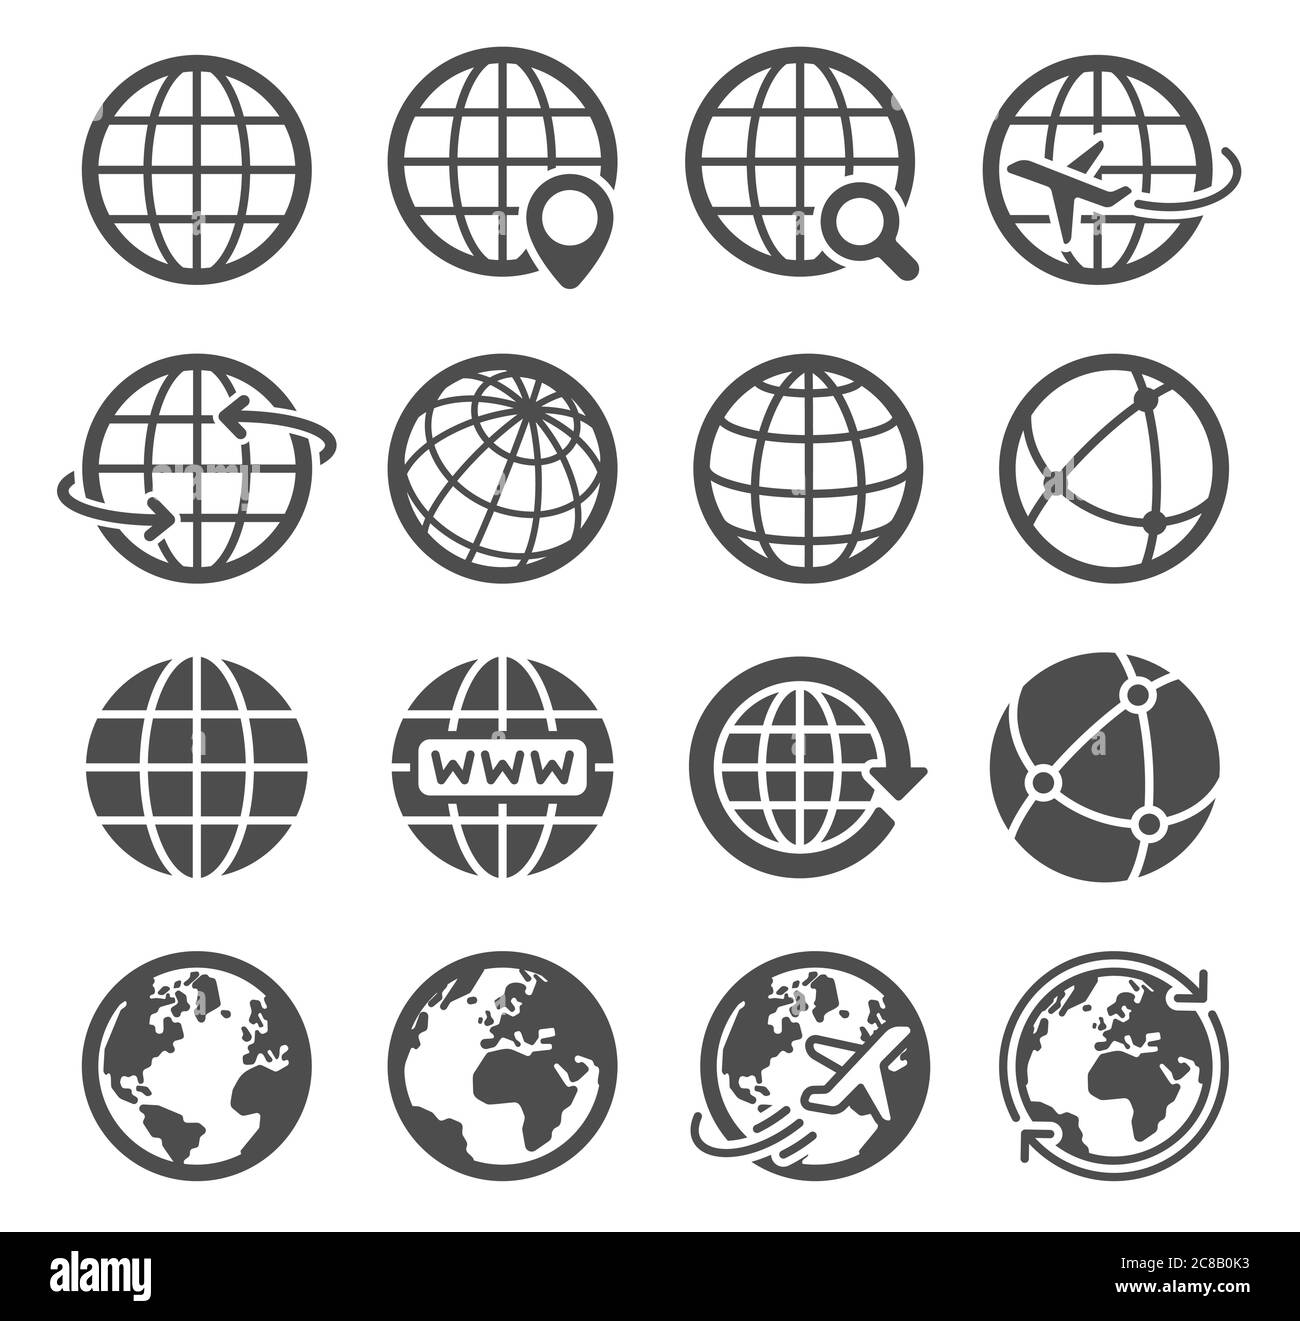 Erdglobensymbole. Weltweite Karte sphärischer Planet, Geographie Kontinent Kontur, Welt Umlaufbahn globale Kommunikation Tourismus Logo Vektor-Symbole. Internet Stock Vektor